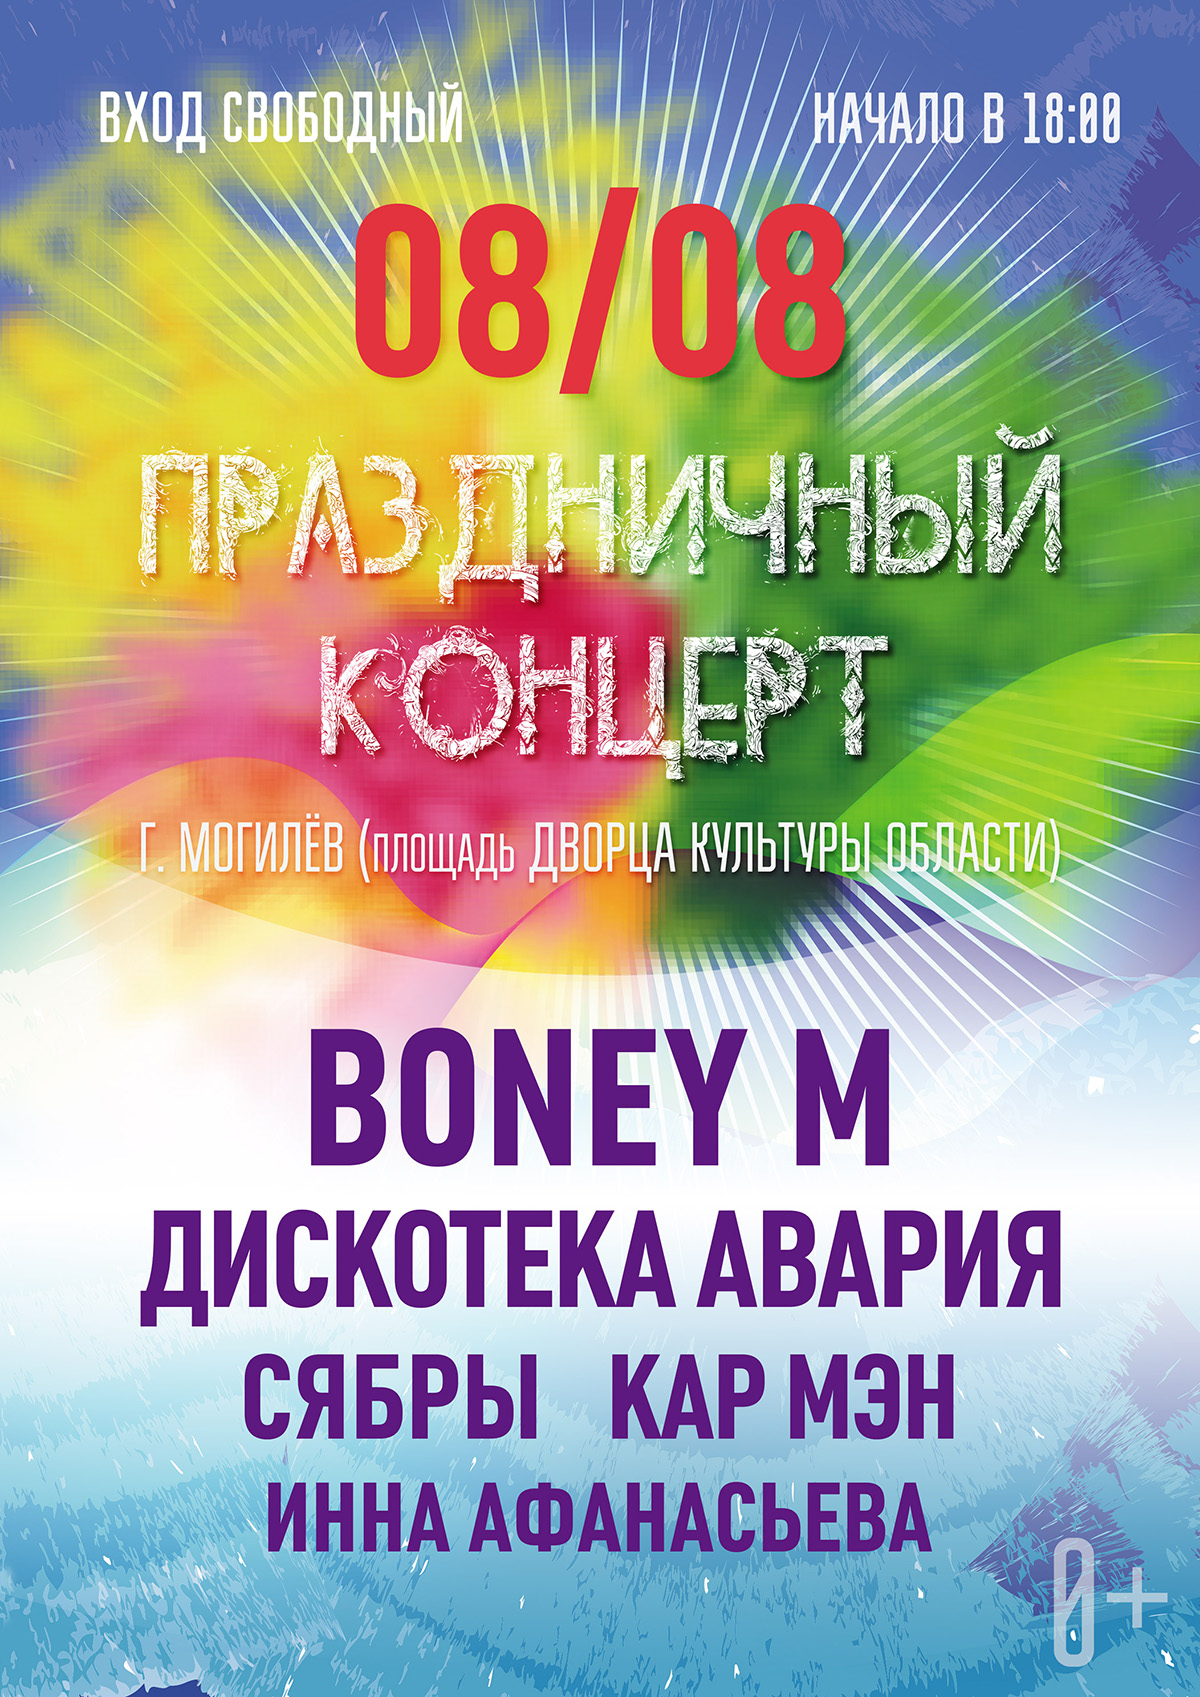 Boney M, «Дискотека Авария», «Сябры»: большой праздничный концерт пройдет в Могилеве 8 августа